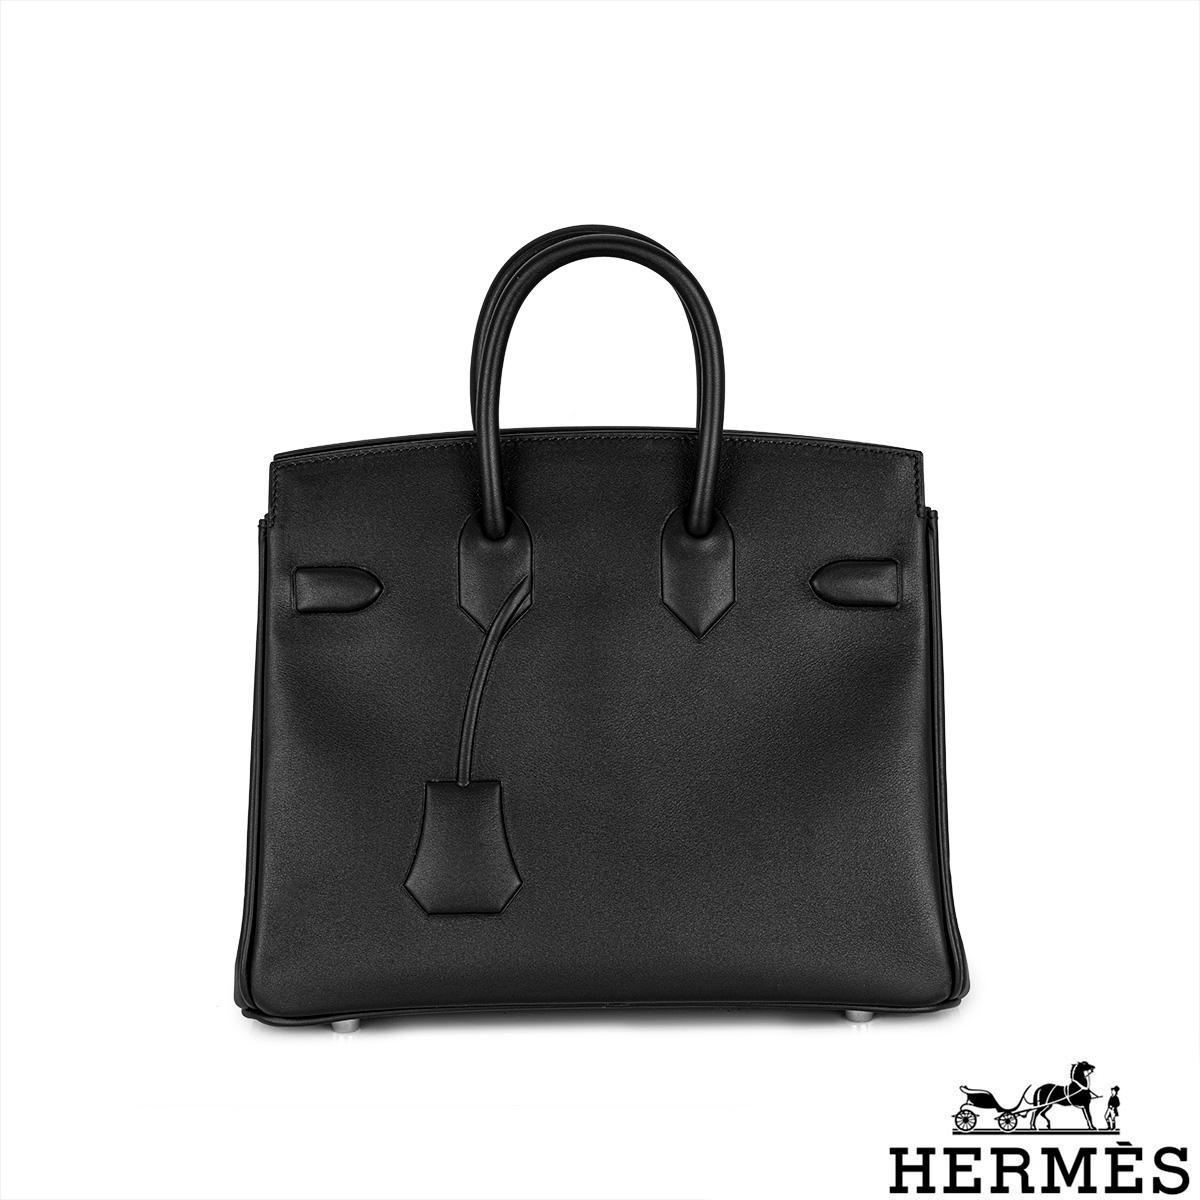 Eine Hermès Birkin 25cm Handtasche in limitierter Auflage. Diese seltene Handtasche wurde erstmals 2009 vom französischen Designer Jean Paul Gaultier als Essenz einer Birkin entworfen. Das Äußere dieser Birkin ist aus schwarzem Swift-Leder mit